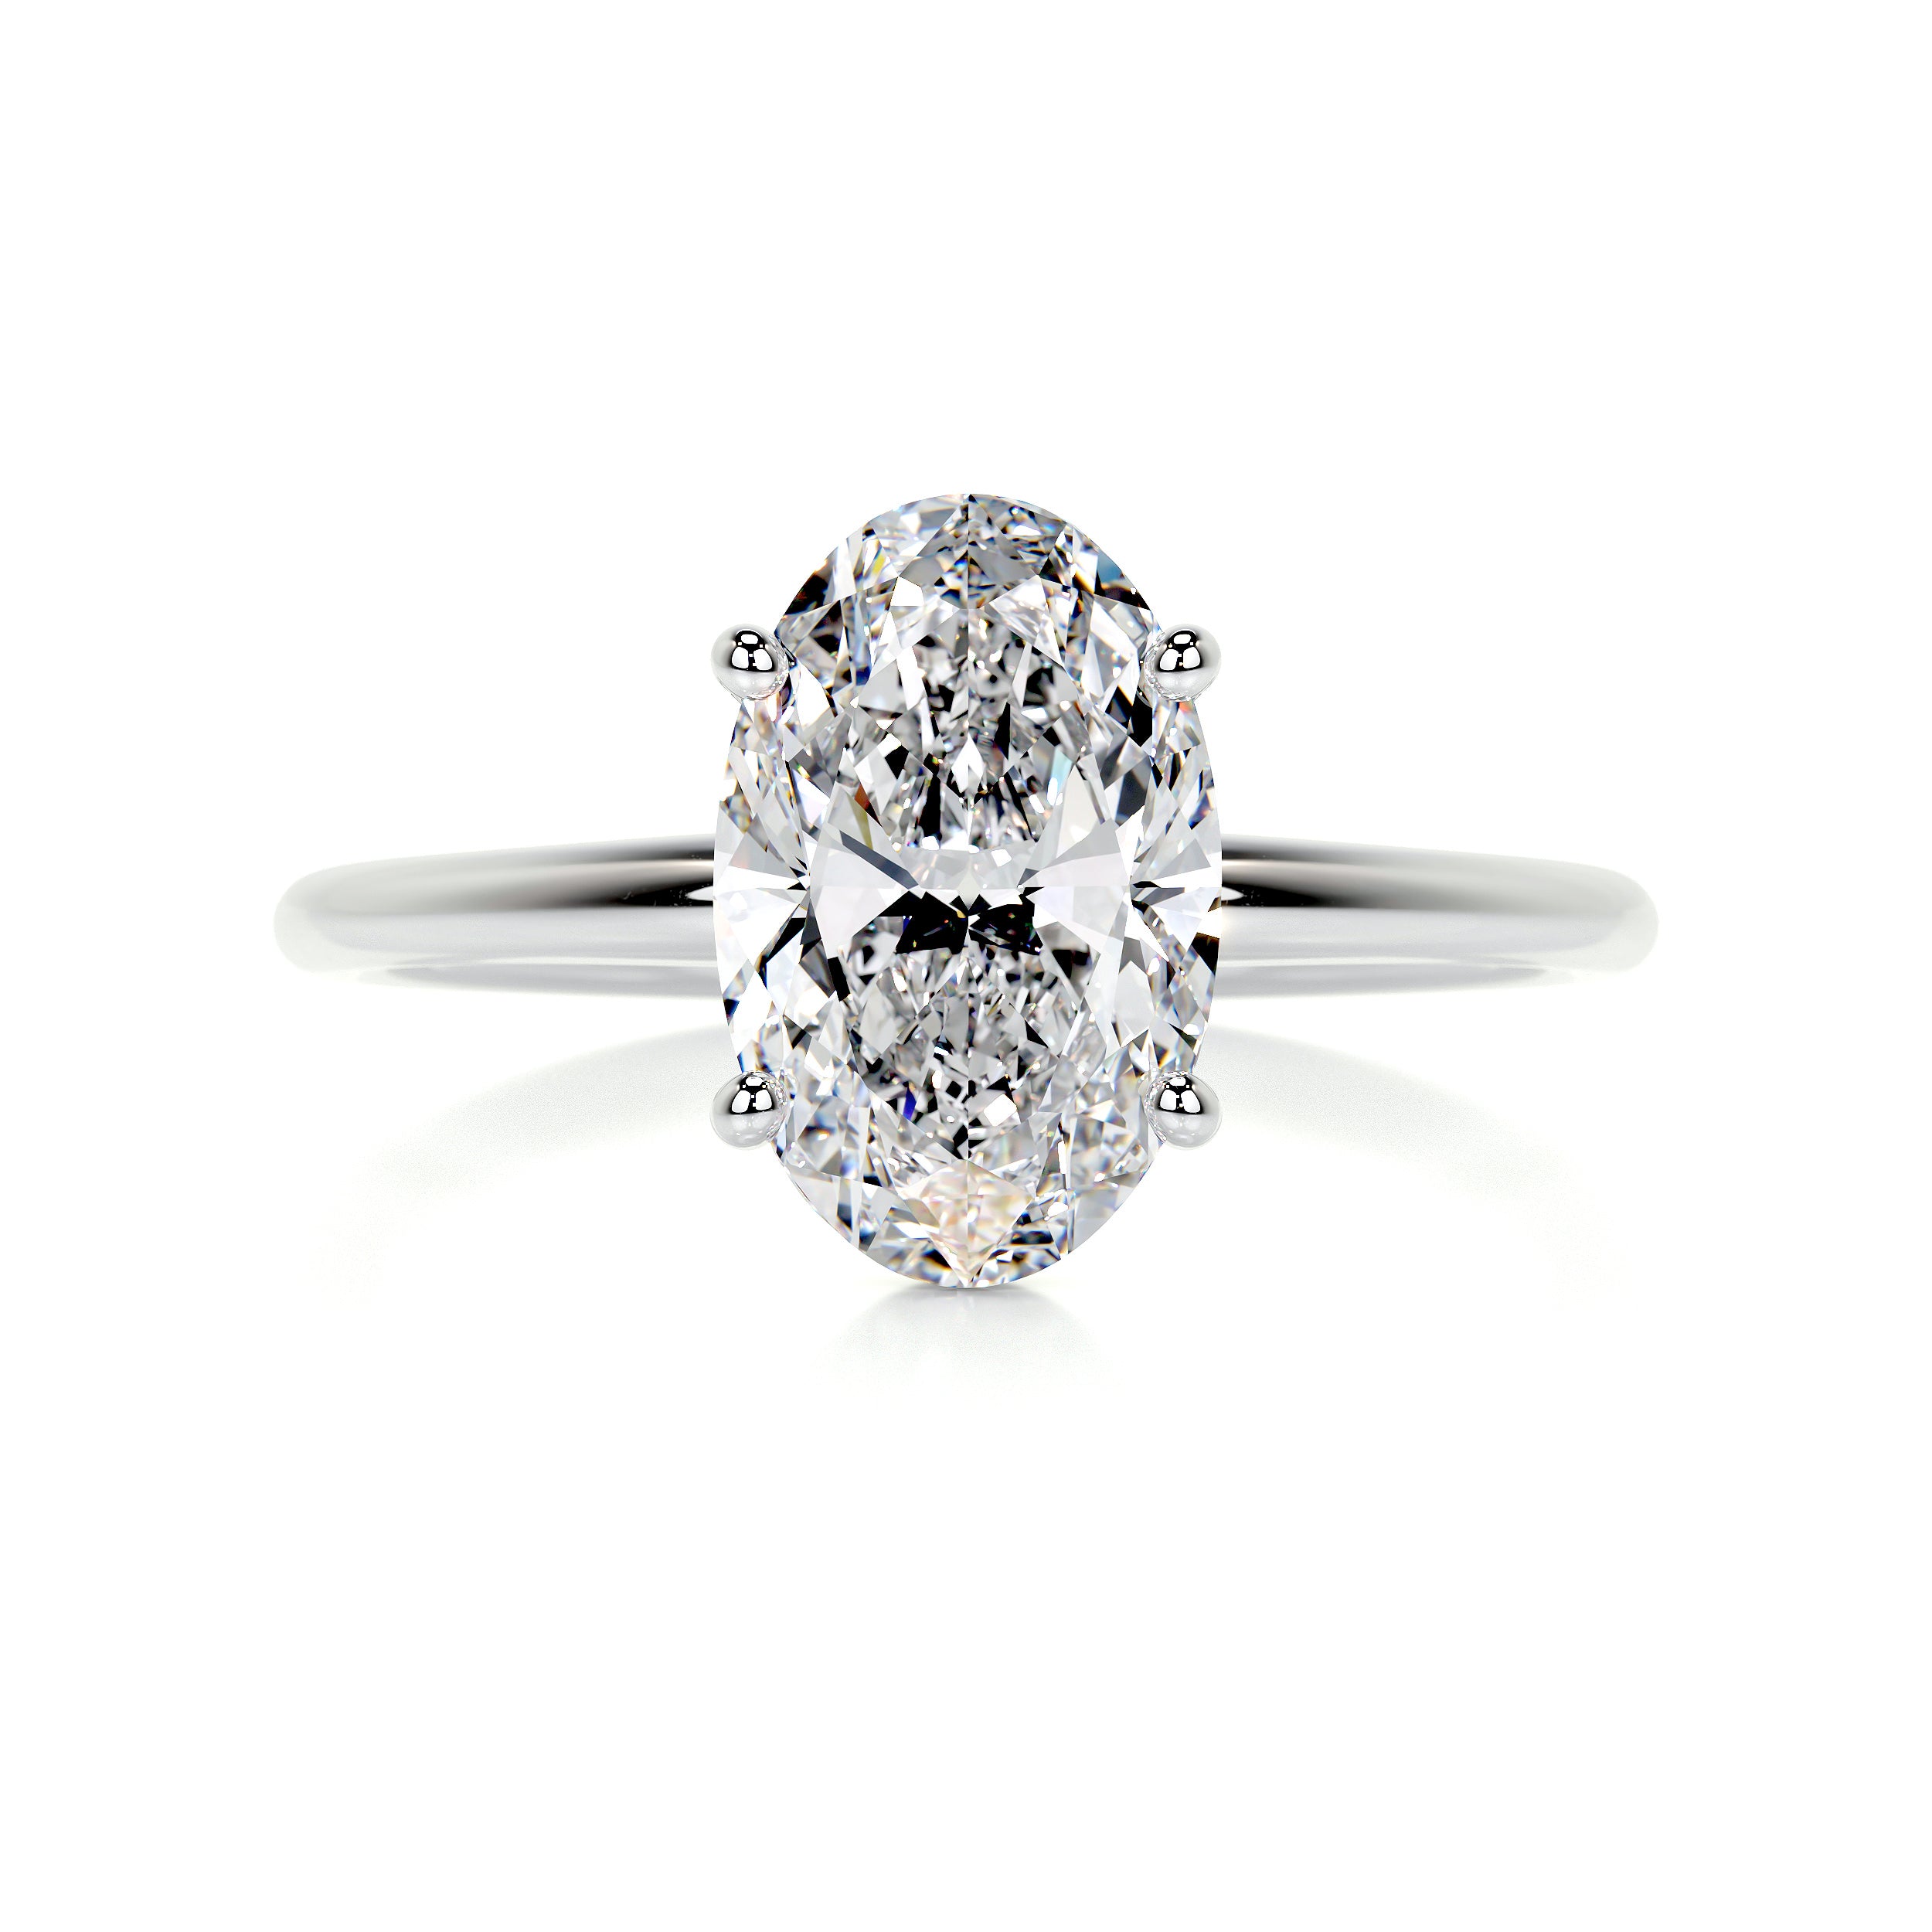 Adaline Diamond Engagement Ring   (2 Carat) -Platinum